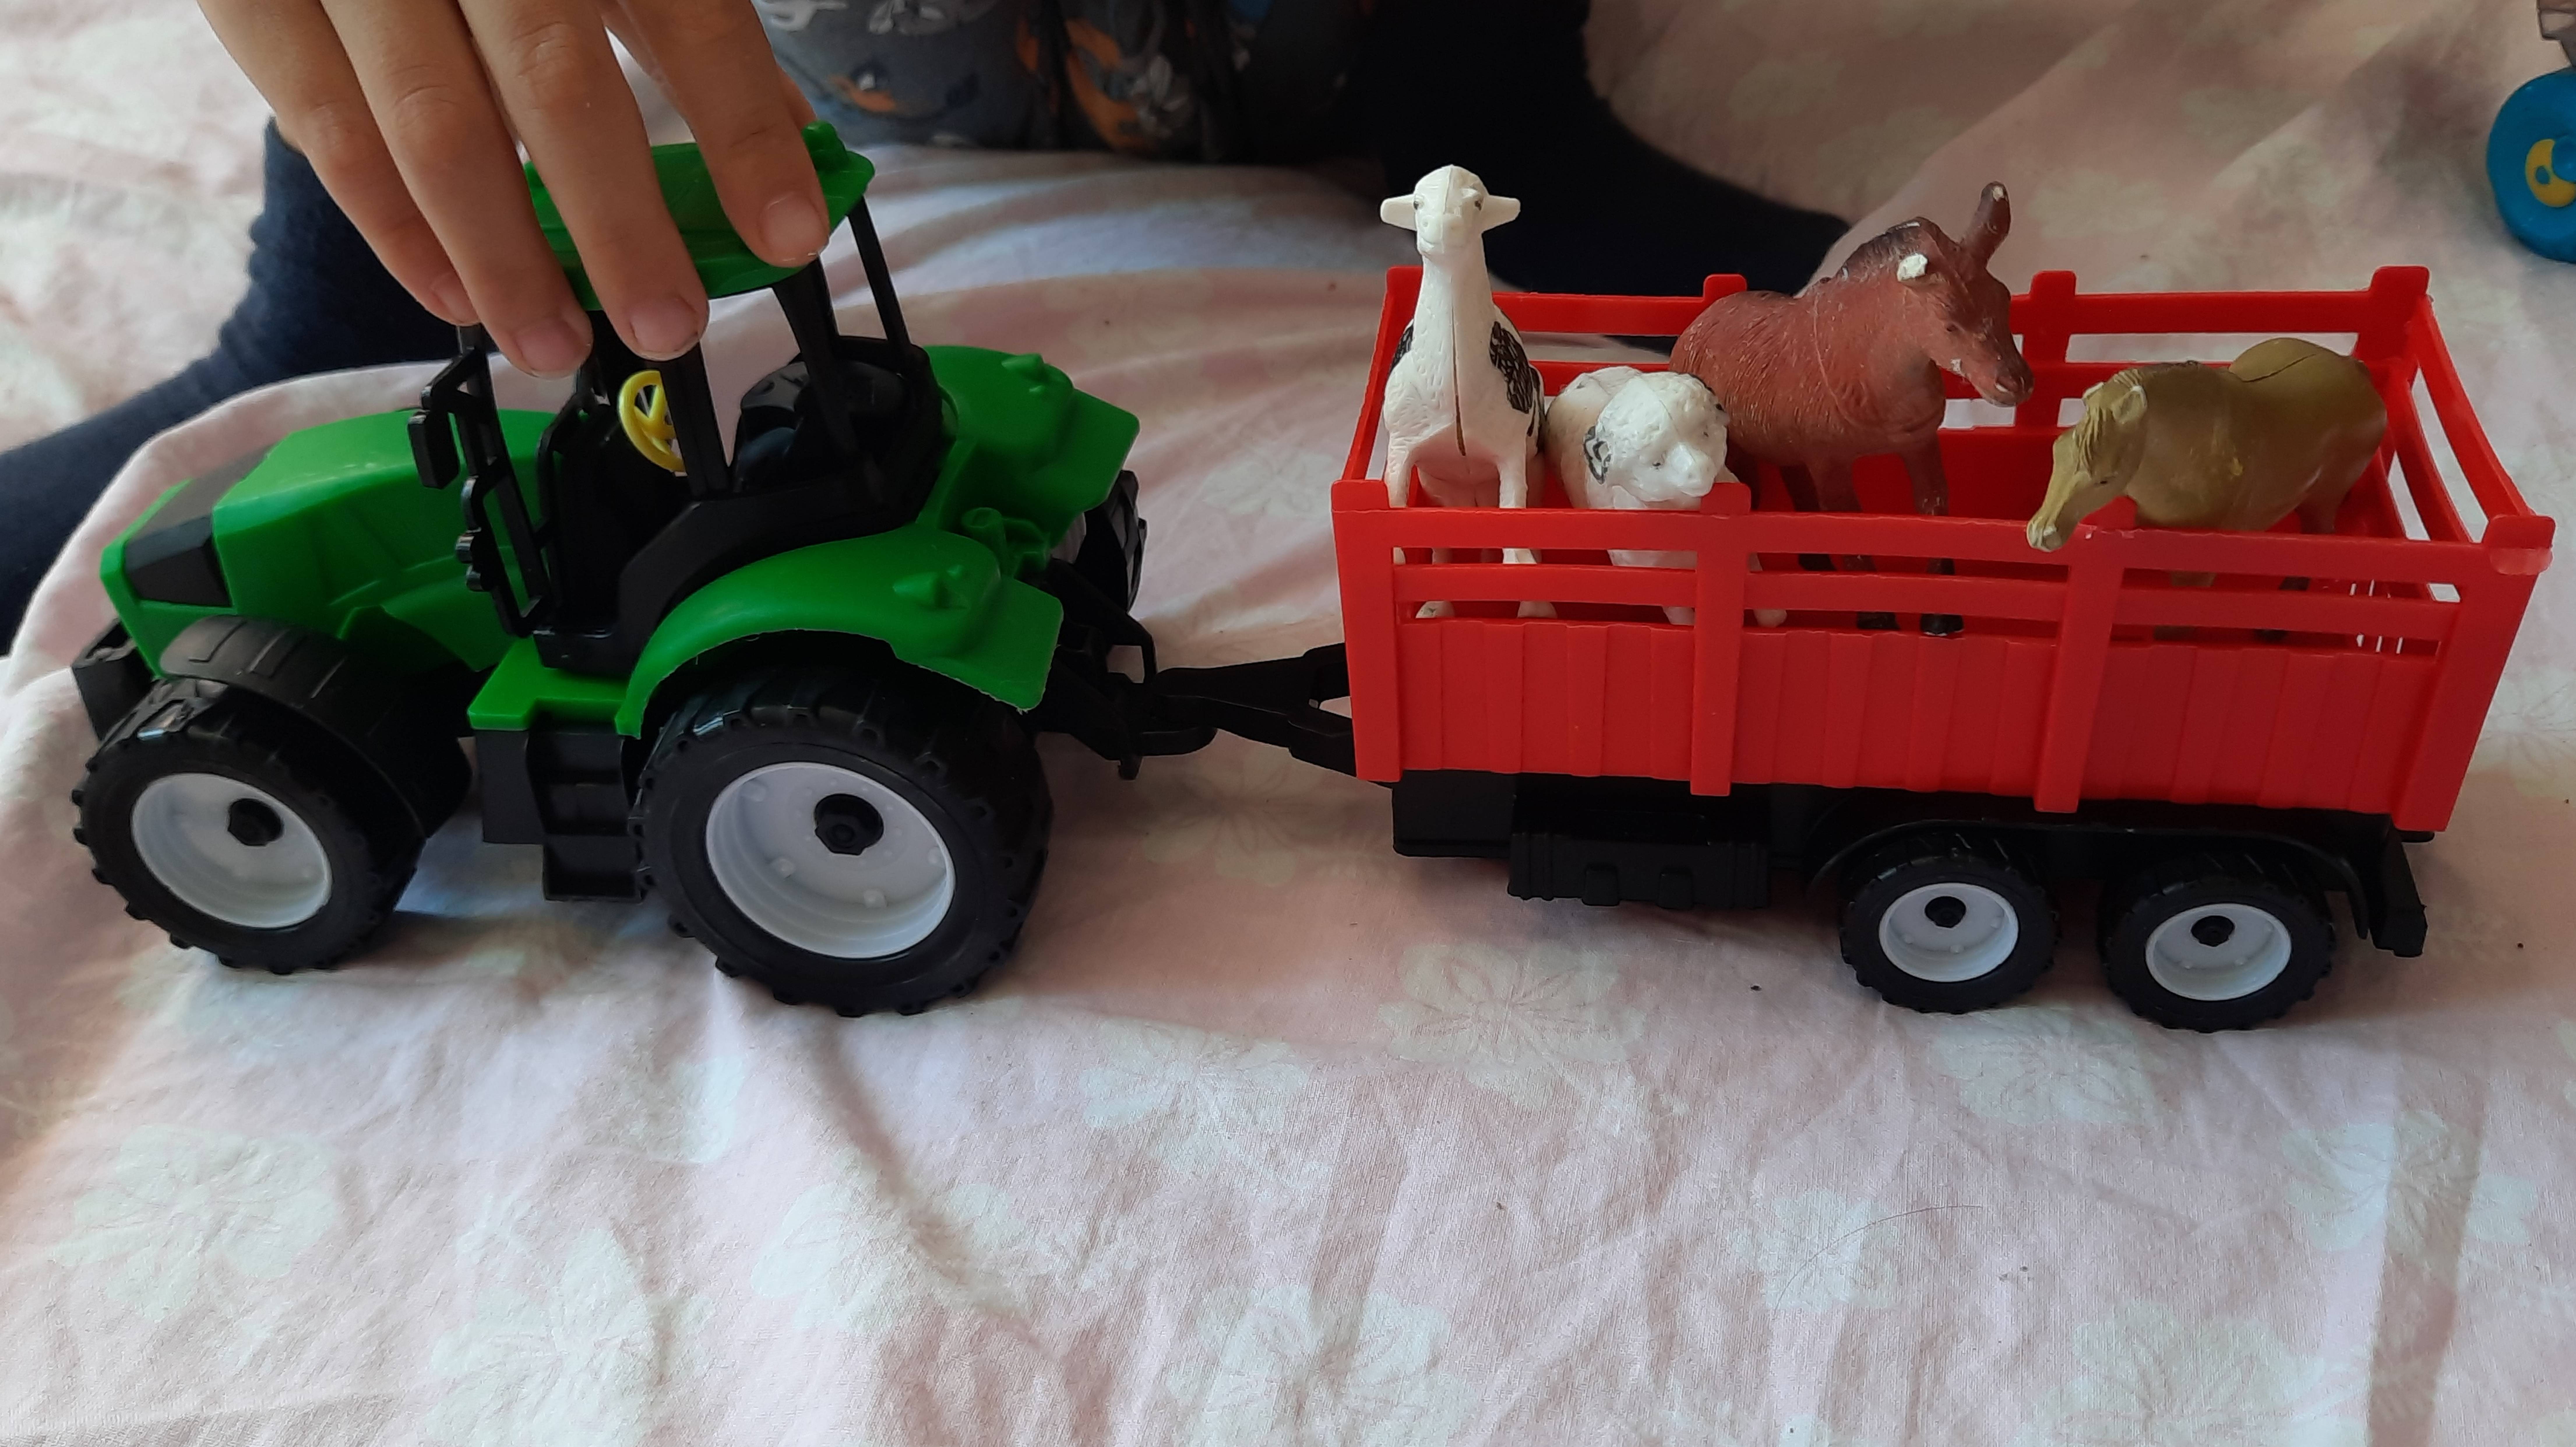 Дети играют с трактором 🙂❤️😃
Зеленый трактор и красный прицеп 🙂❤️😃
Синий трактор или зеленый? 😃